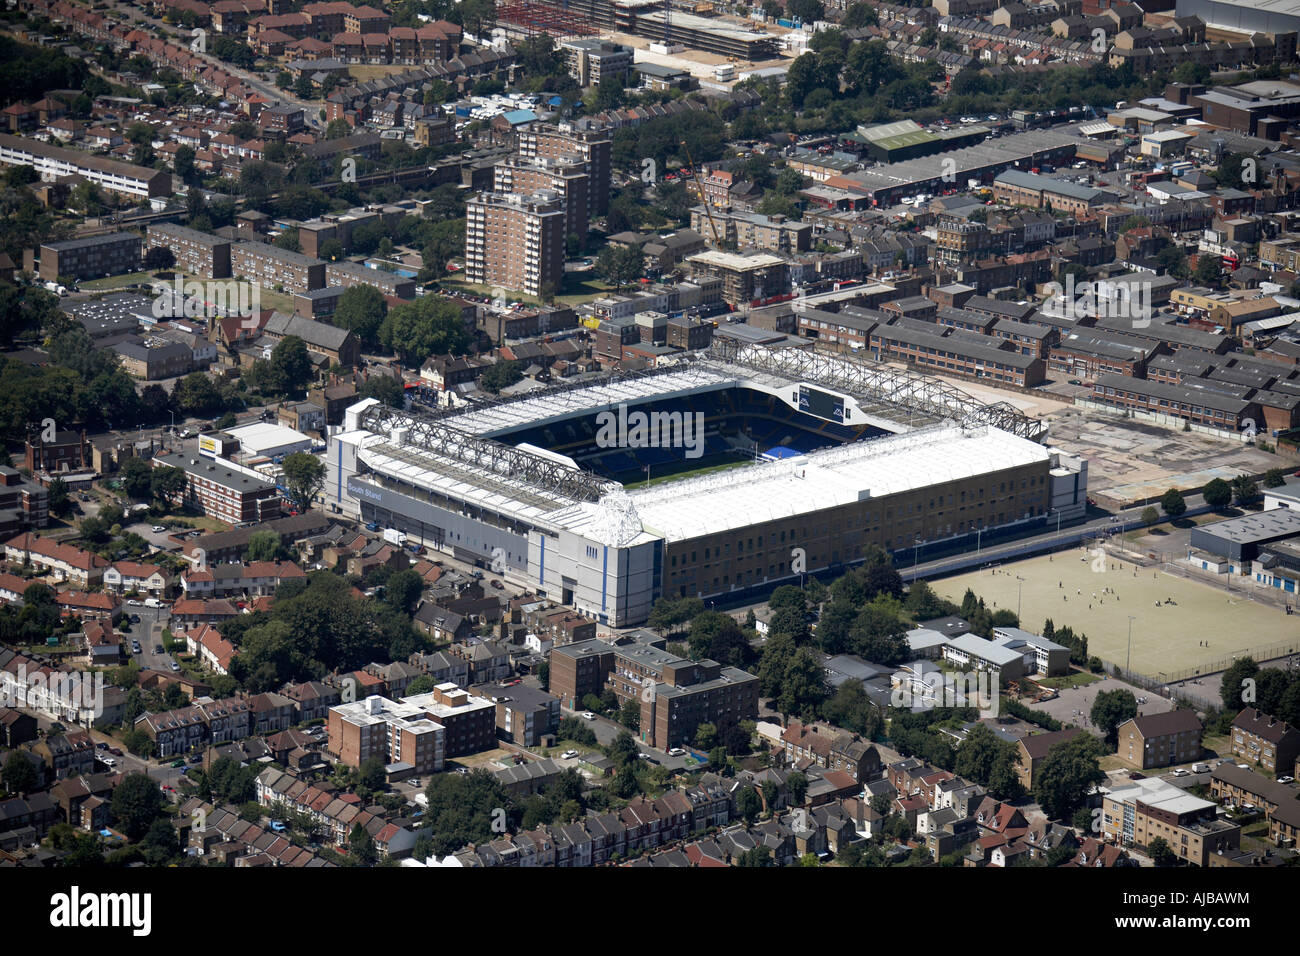 Vue aérienne au nord-ouest de White Hart Lane, Tottenham Hotspur F C Accueil rez-de Haringey London N17 England UK oblique de haut niveau Banque D'Images